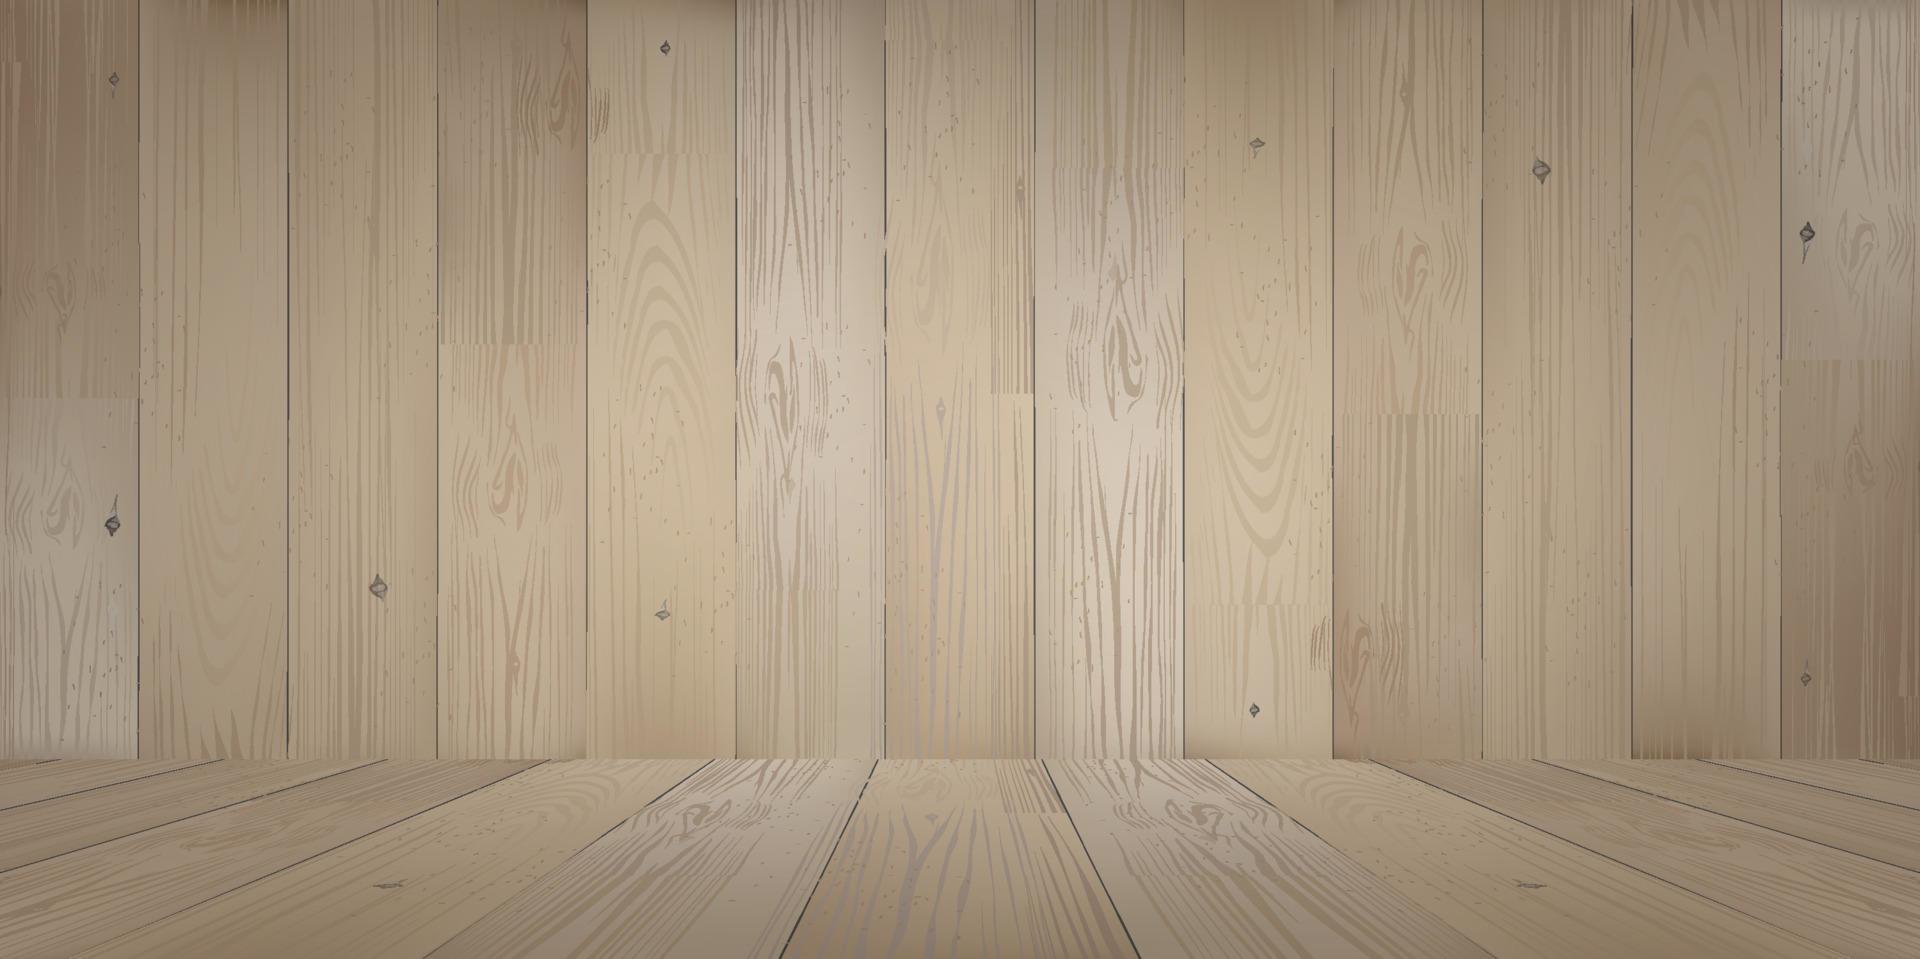 Wooden room space background with perspective wooden floor. Vector. vector